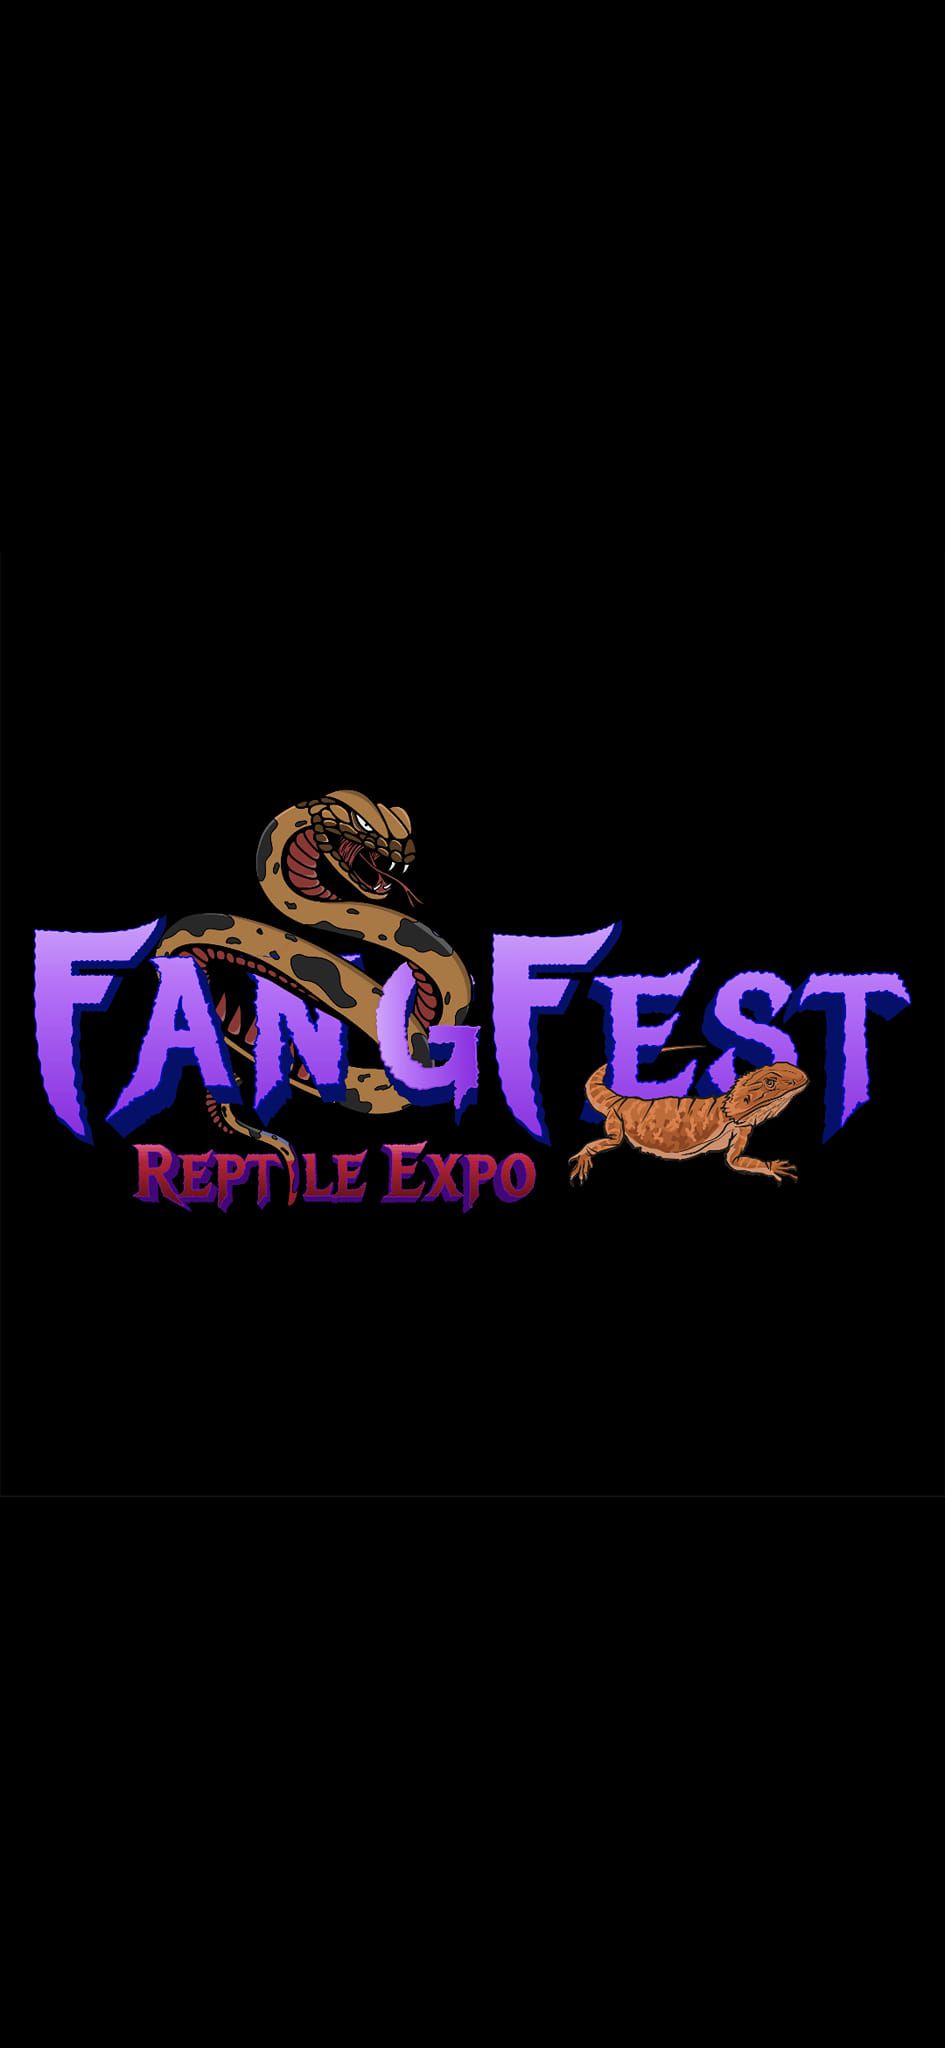 FangFest Reptile Expo 